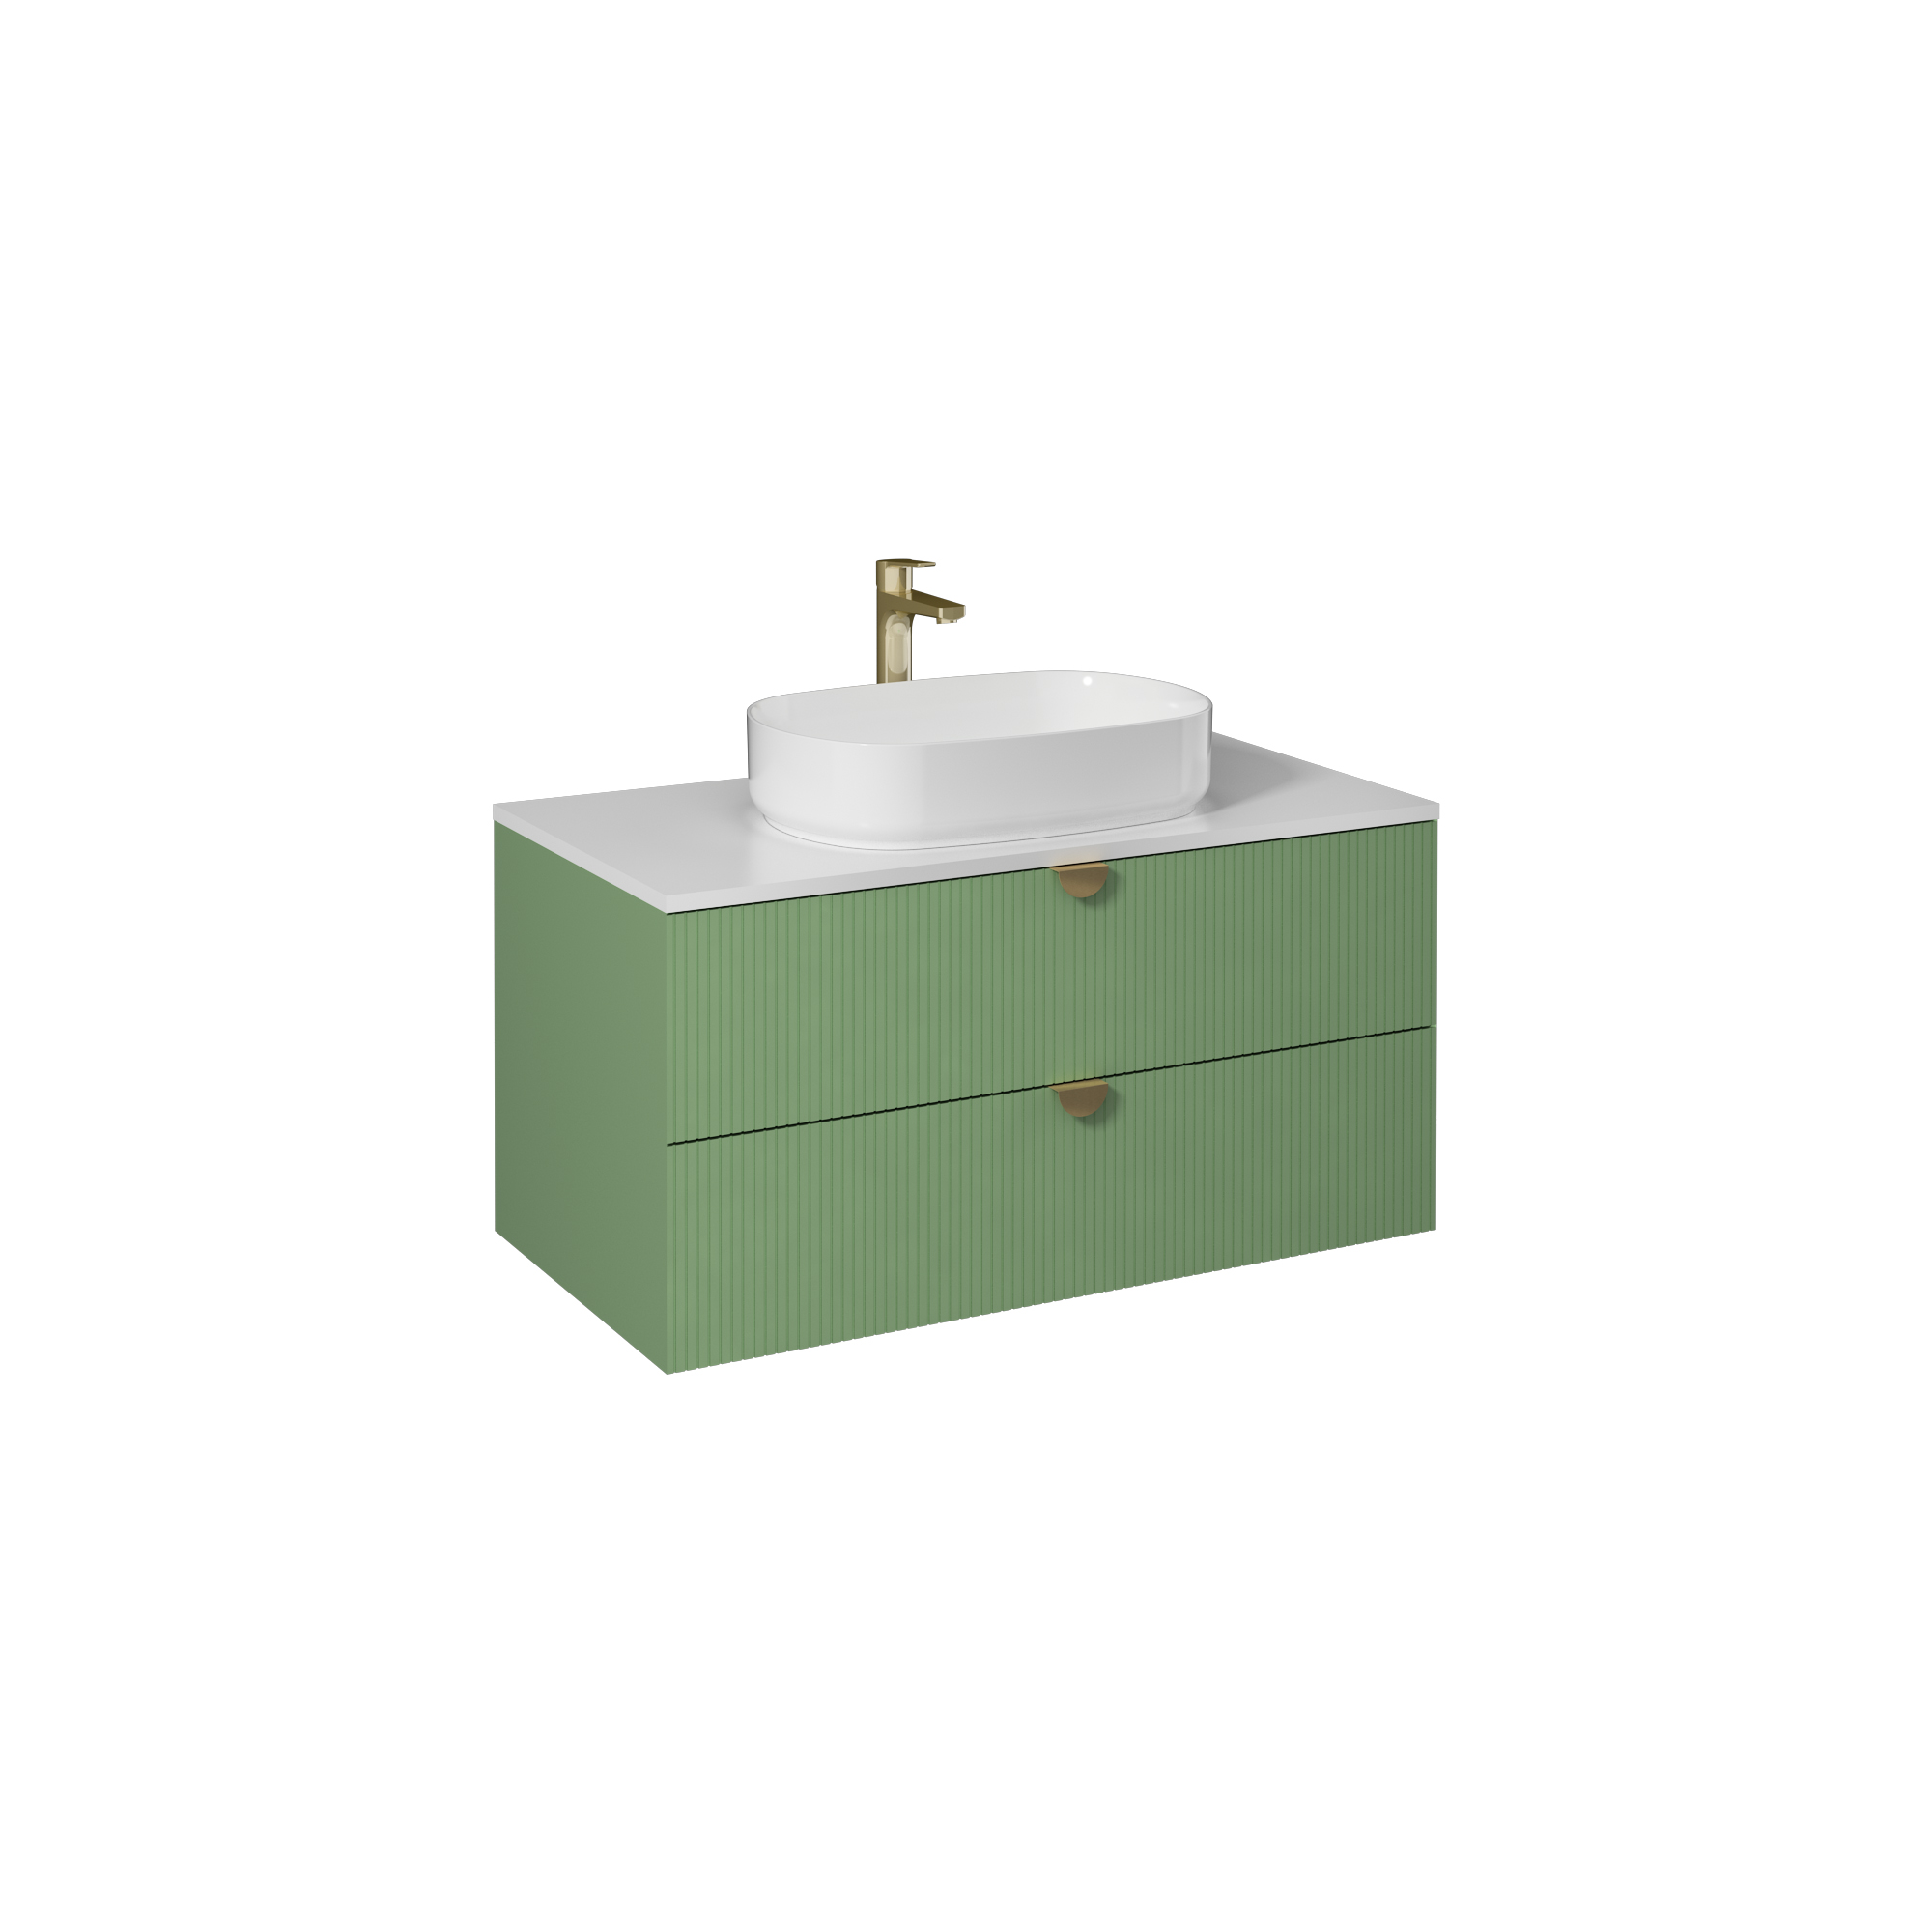 Infinity  Washbasin Cabinet Pastel Green, with White Washbasin39"